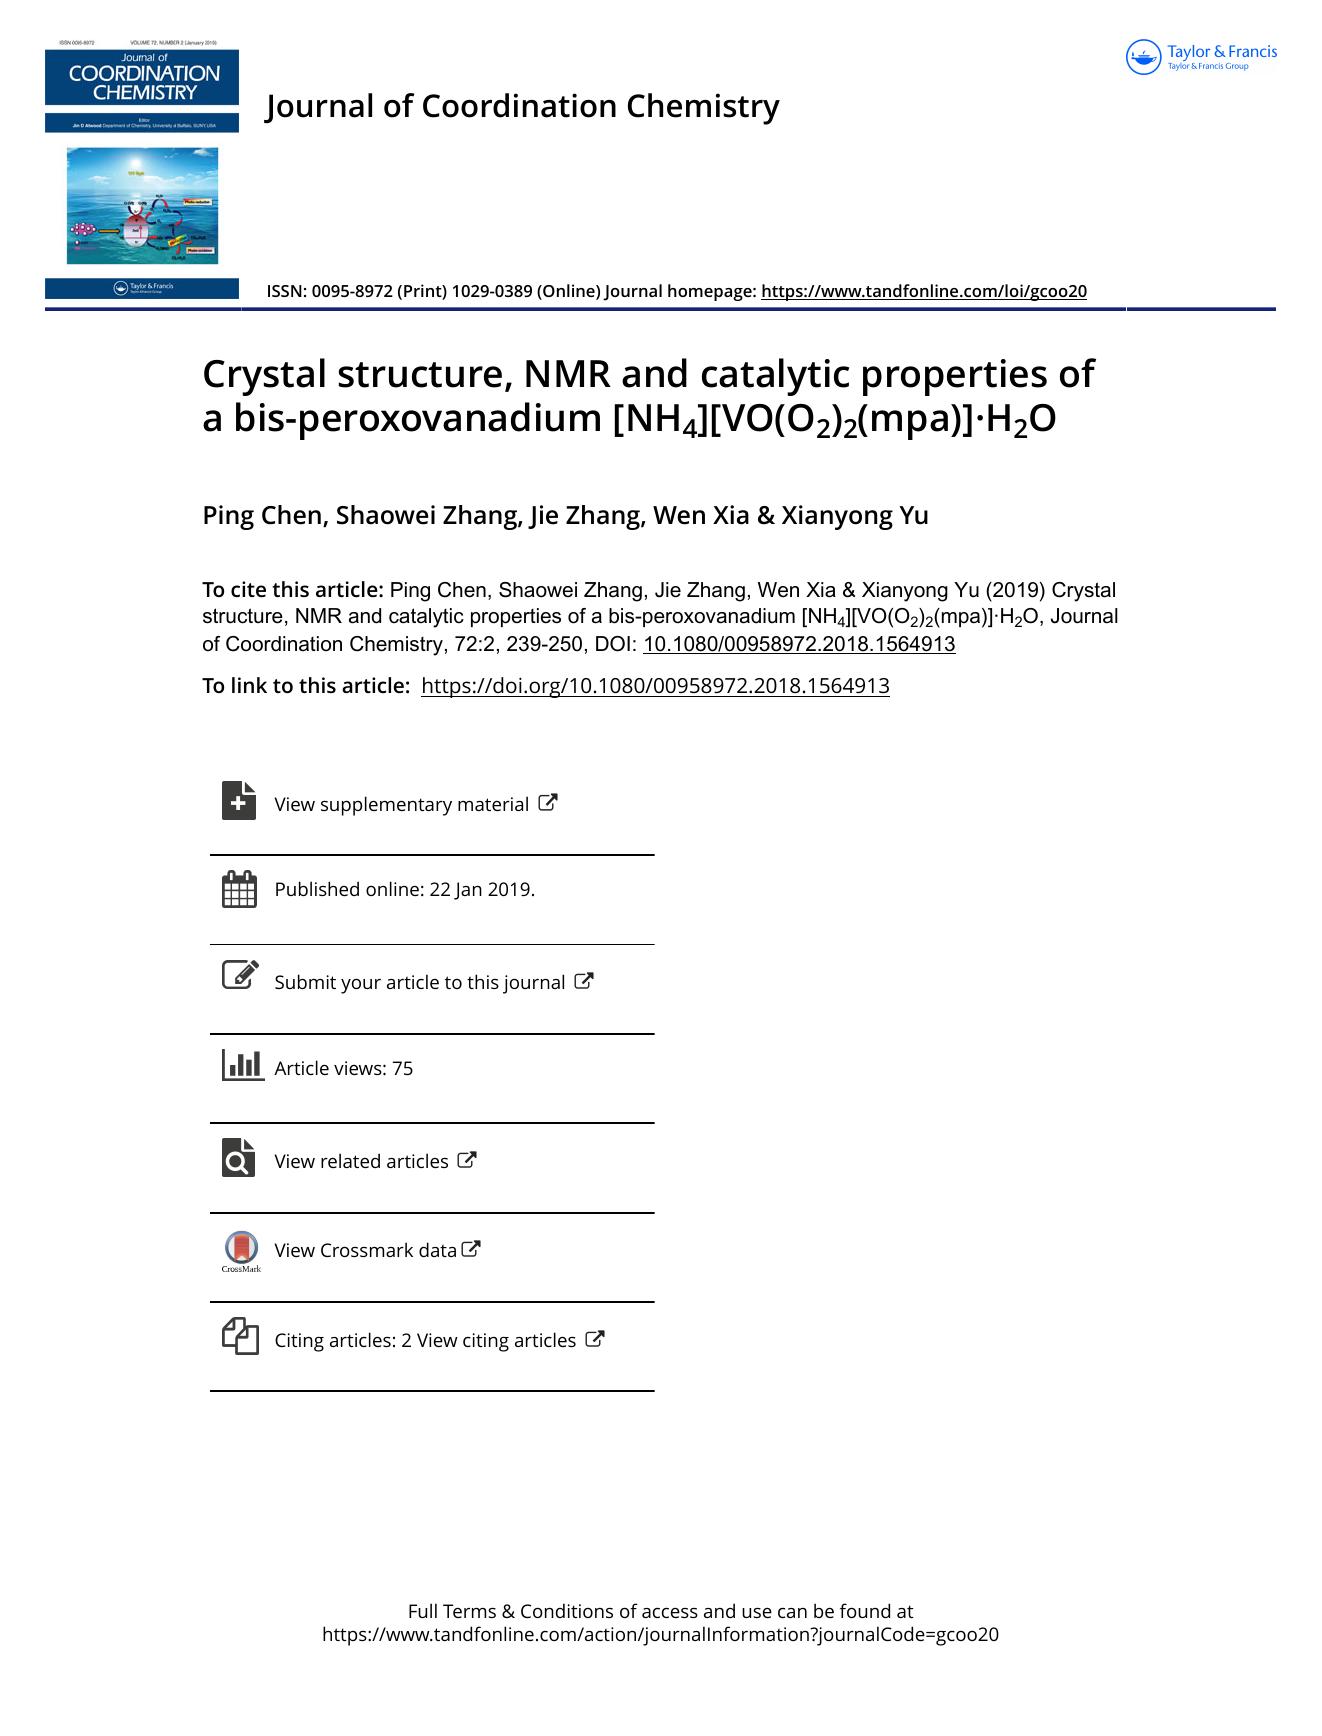 Crystal structure, NMR and catalytic properties of a bis-peroxovanadium [NH4][VO(O2)2(mpa)]Â·H2O by Chen Ping & Zhang Shaowei & Zhang Jie & Xia Wen & Yu Xianyong